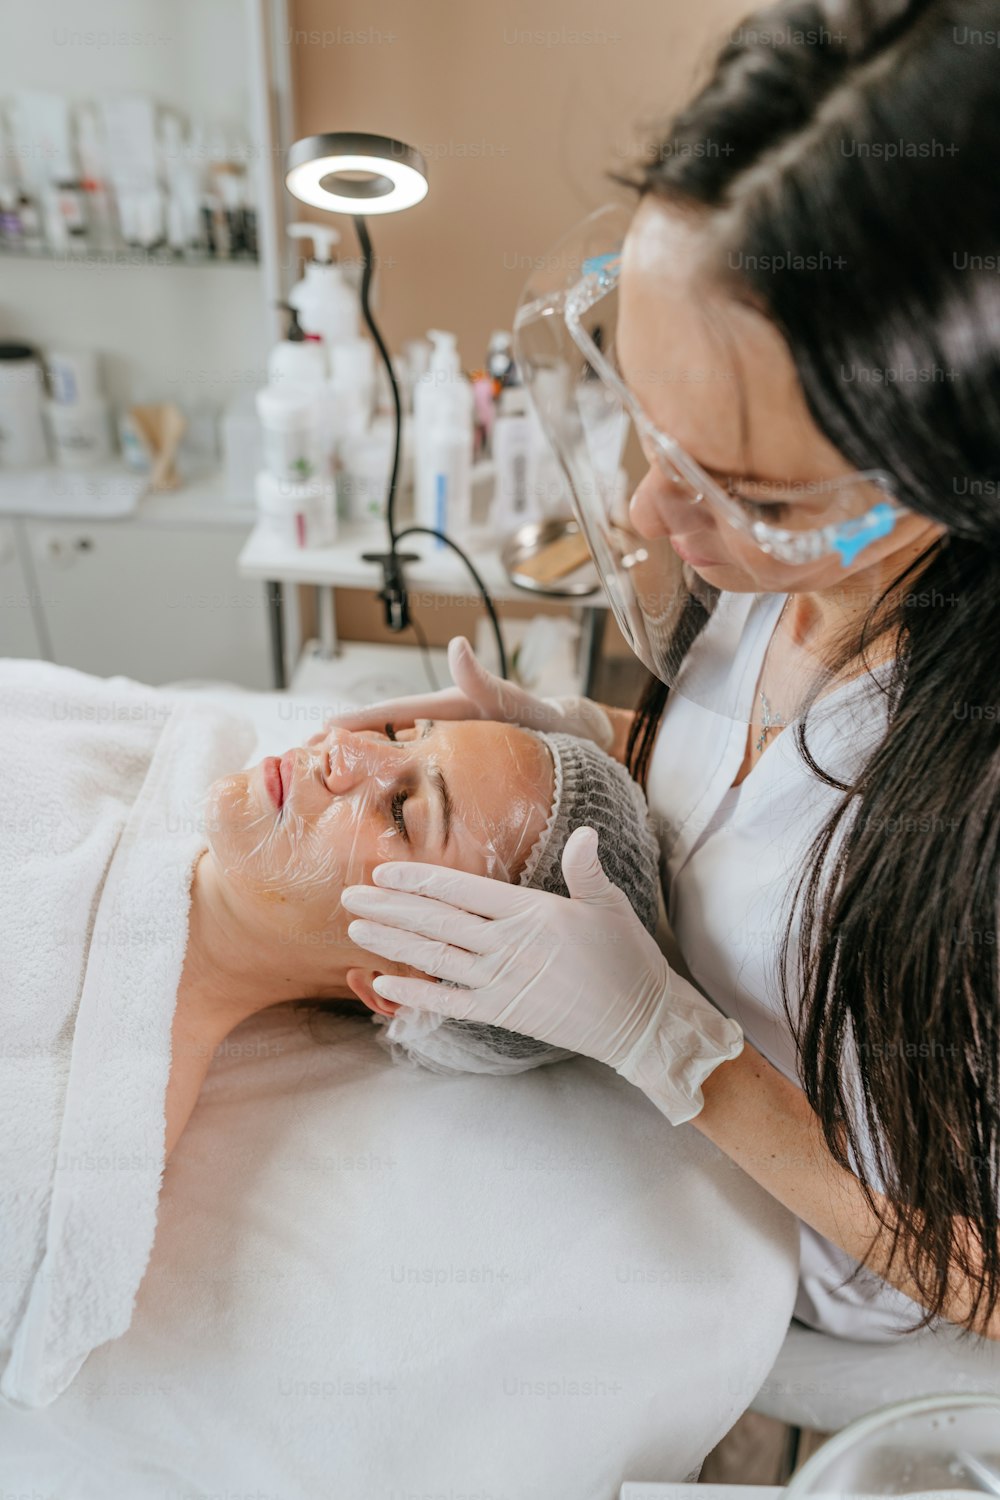 Esteticista ou facial fazendo procedimento de limpeza facial para uma mulher em um salão de beleza